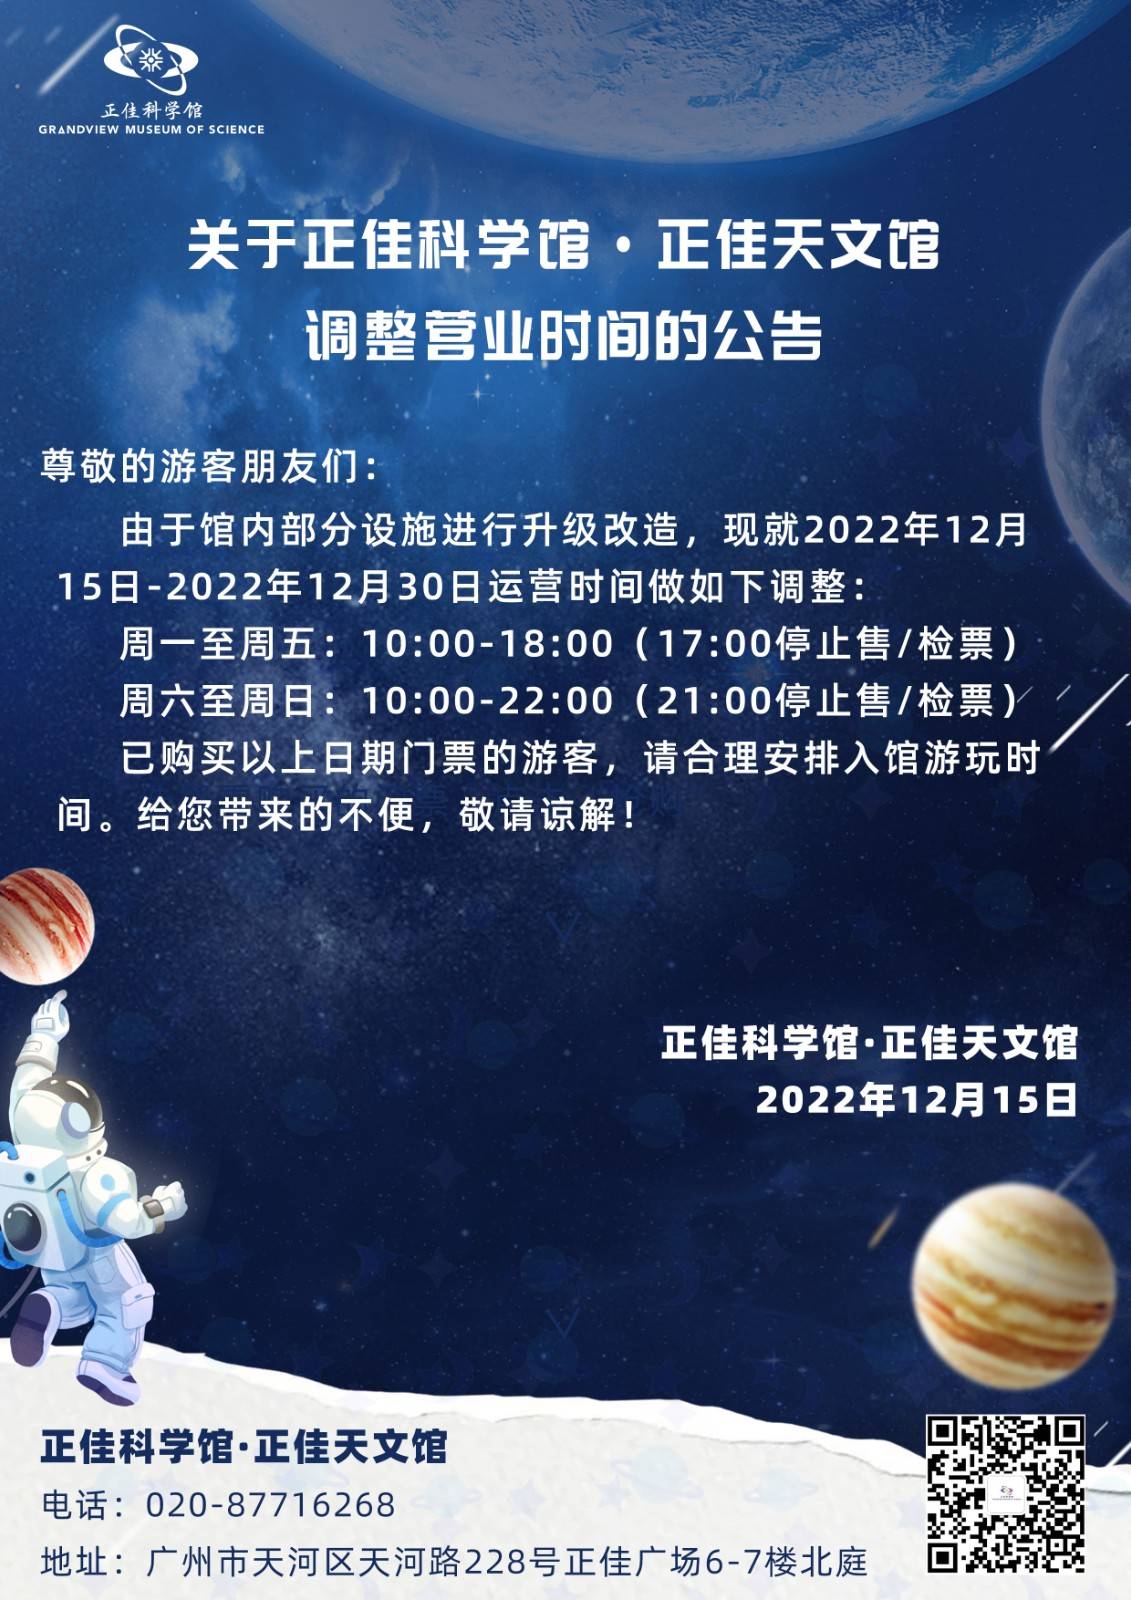 【2023年常规票】广州正佳科学馆+天文馆联票-儿童票